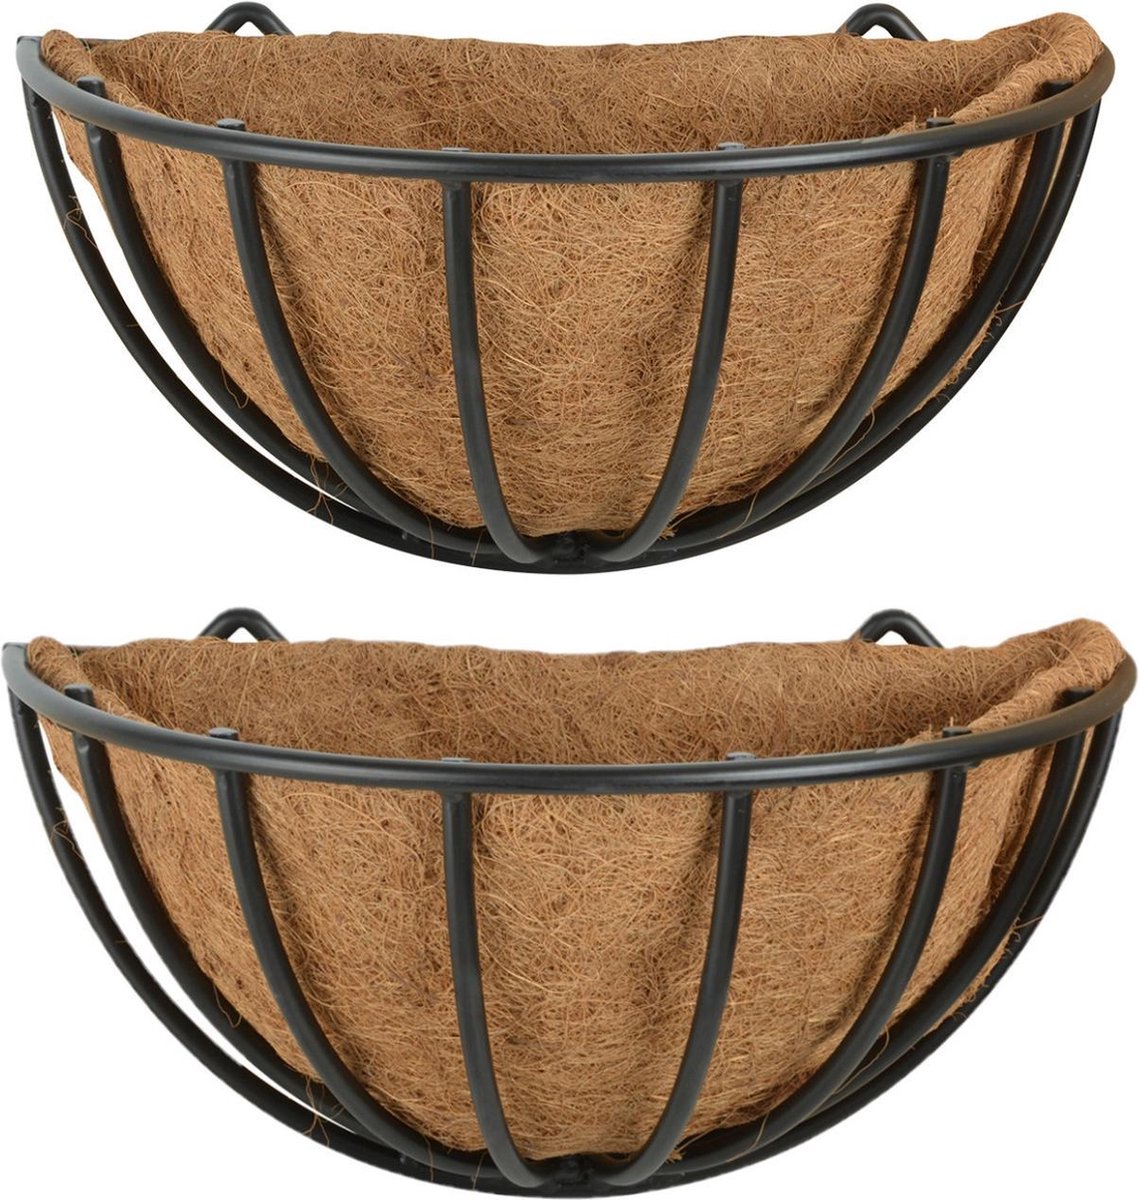 Esschert Design 2x Stuks Metalen Hanging Baskets/ruiven Voor Aan De Wand/muur 35 X 20 Cm - Plantenbakken